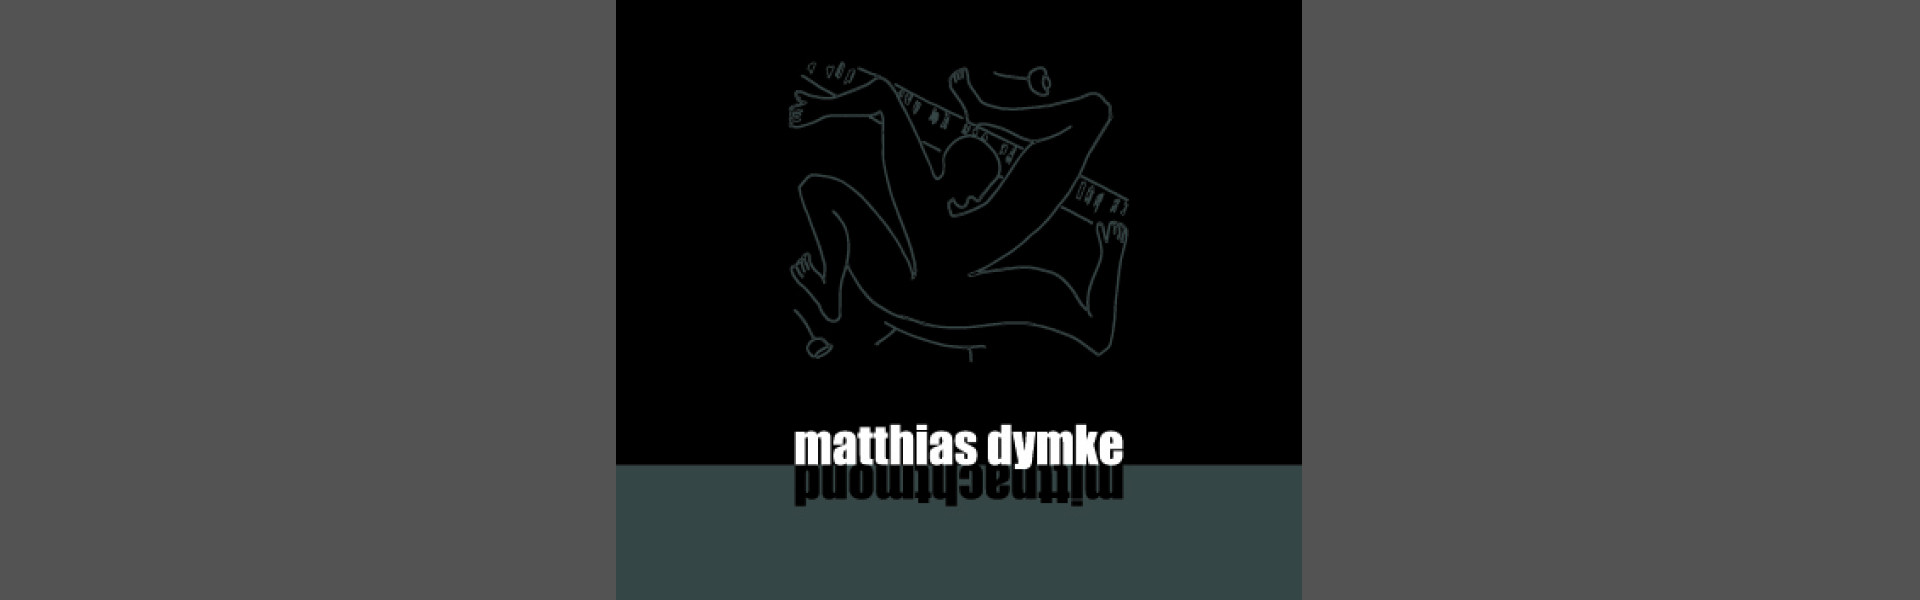 Mittnachtmond - Matthias Dymnke